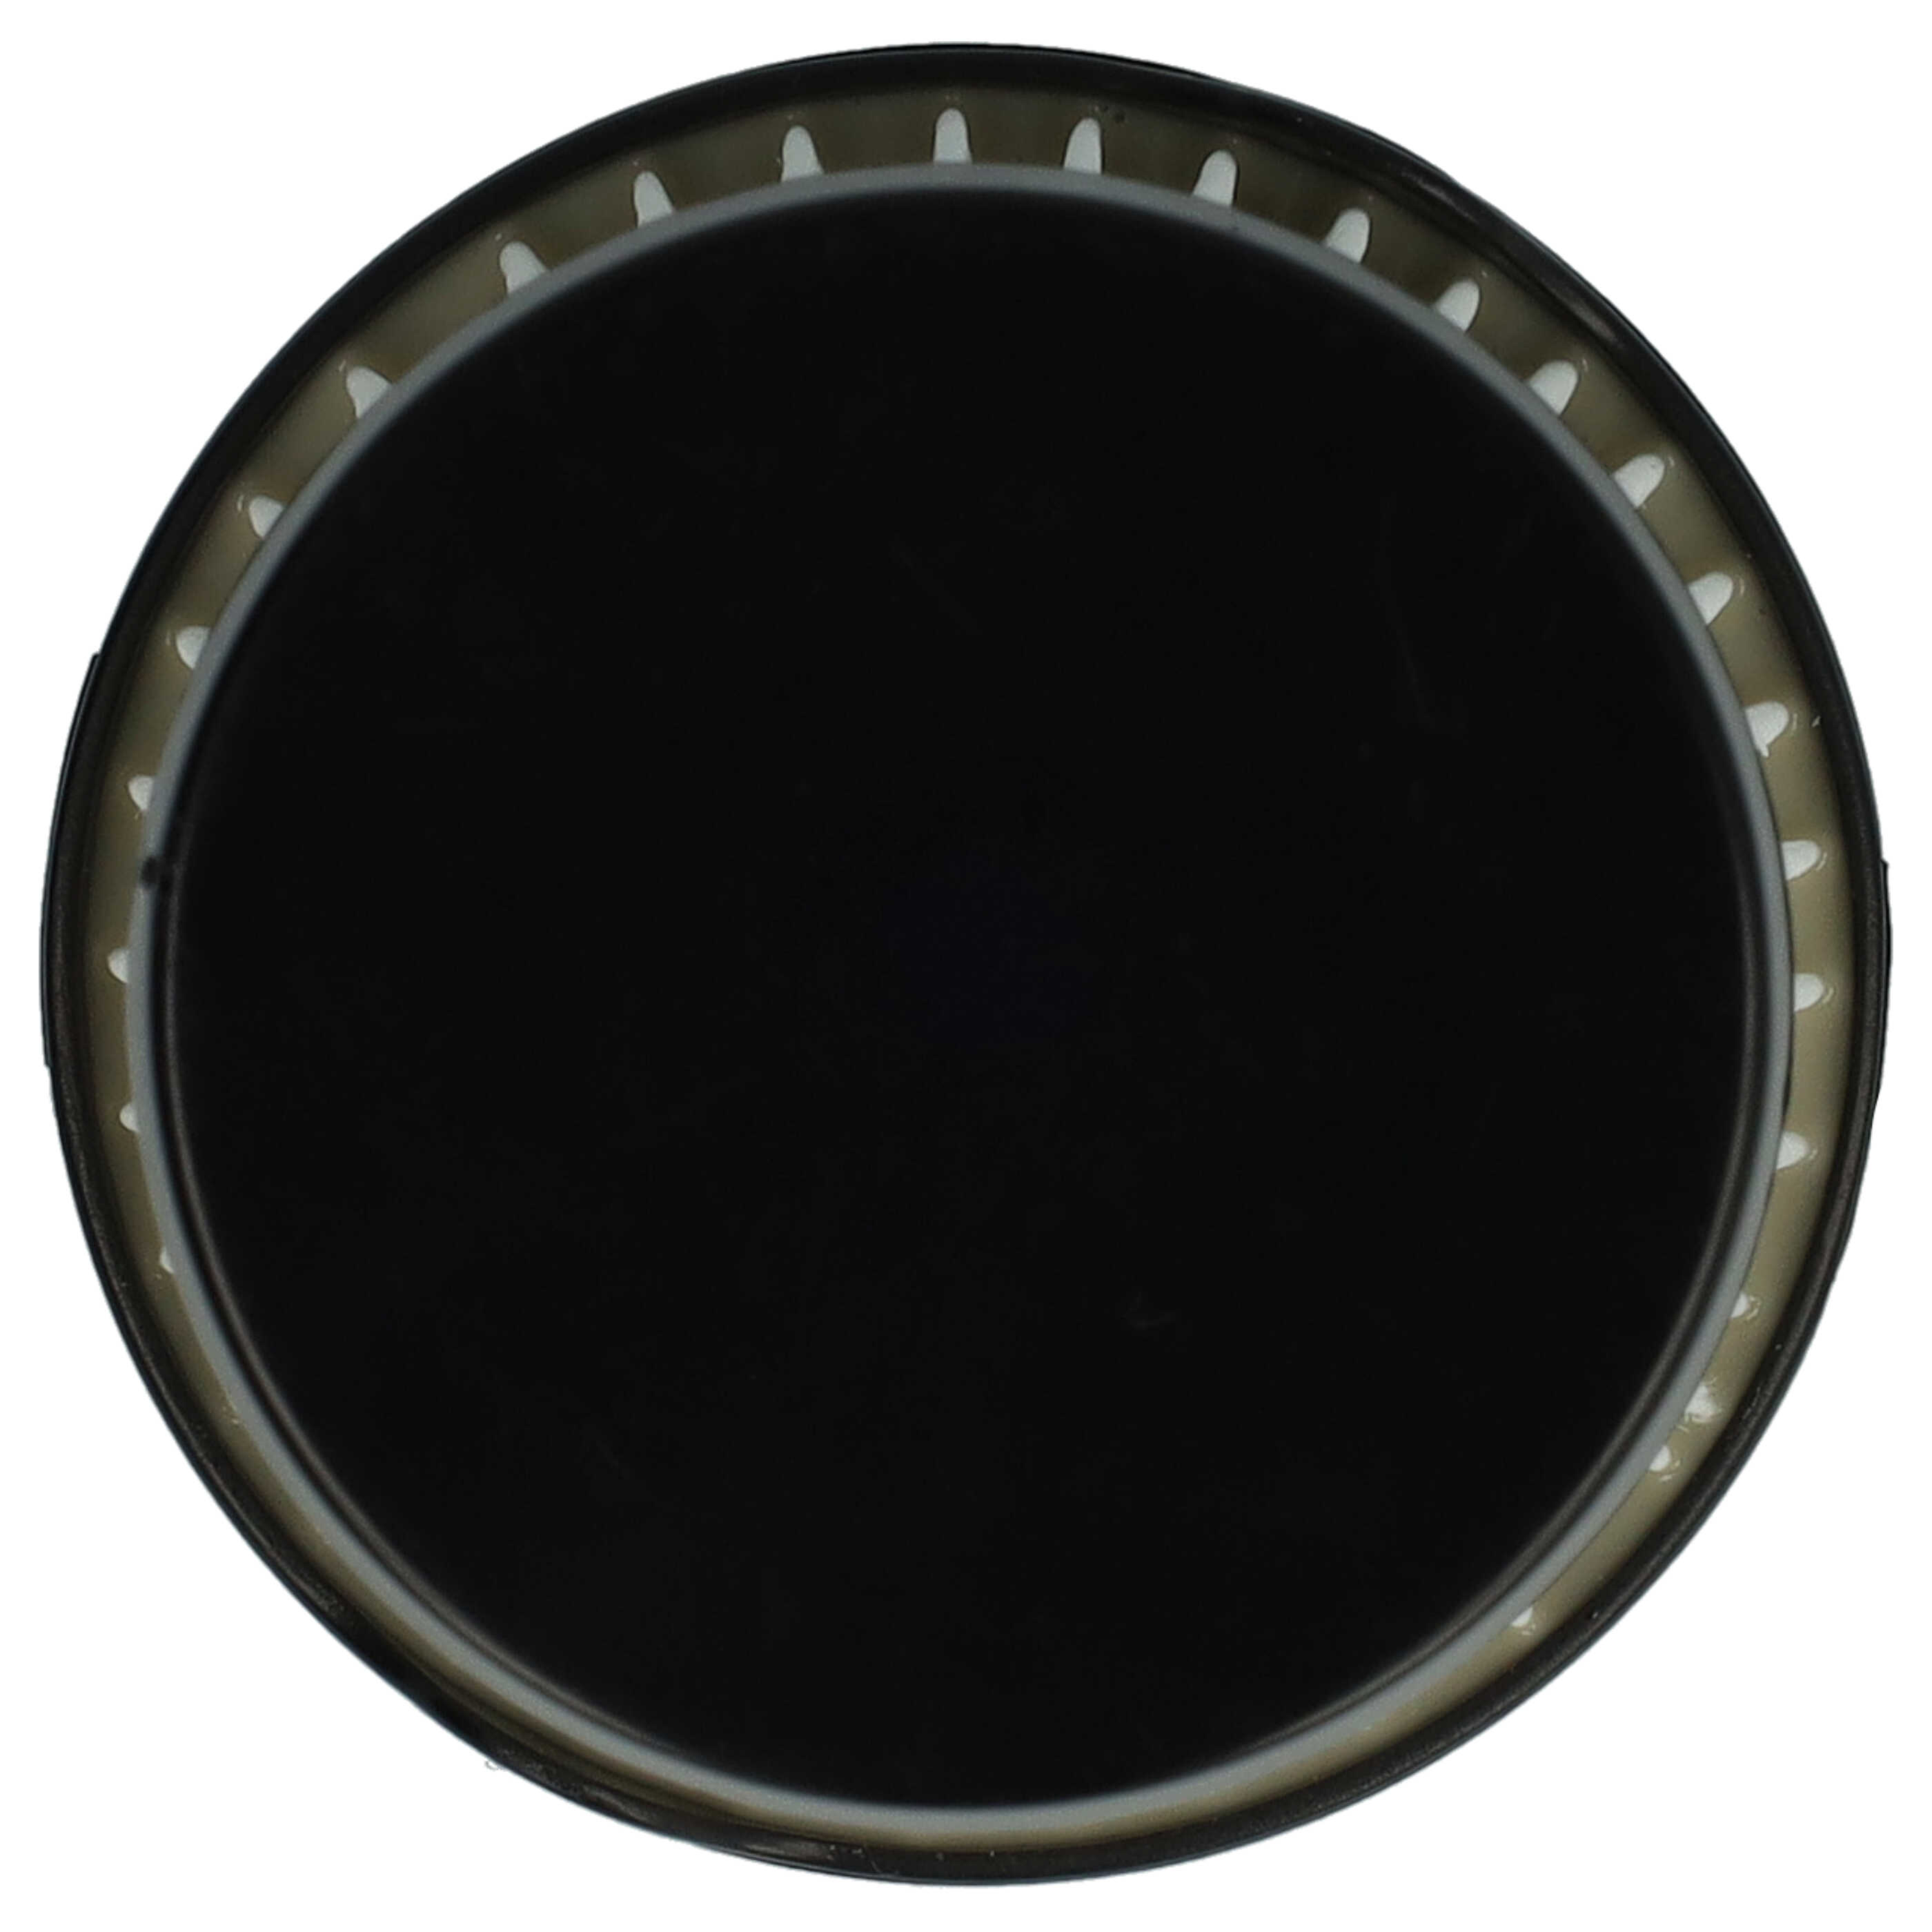 2x Filtr do odkurzacza Electrolux zamiennik AEG 9001683755, 90094073100 - filtr lamelowy, czarny / biały